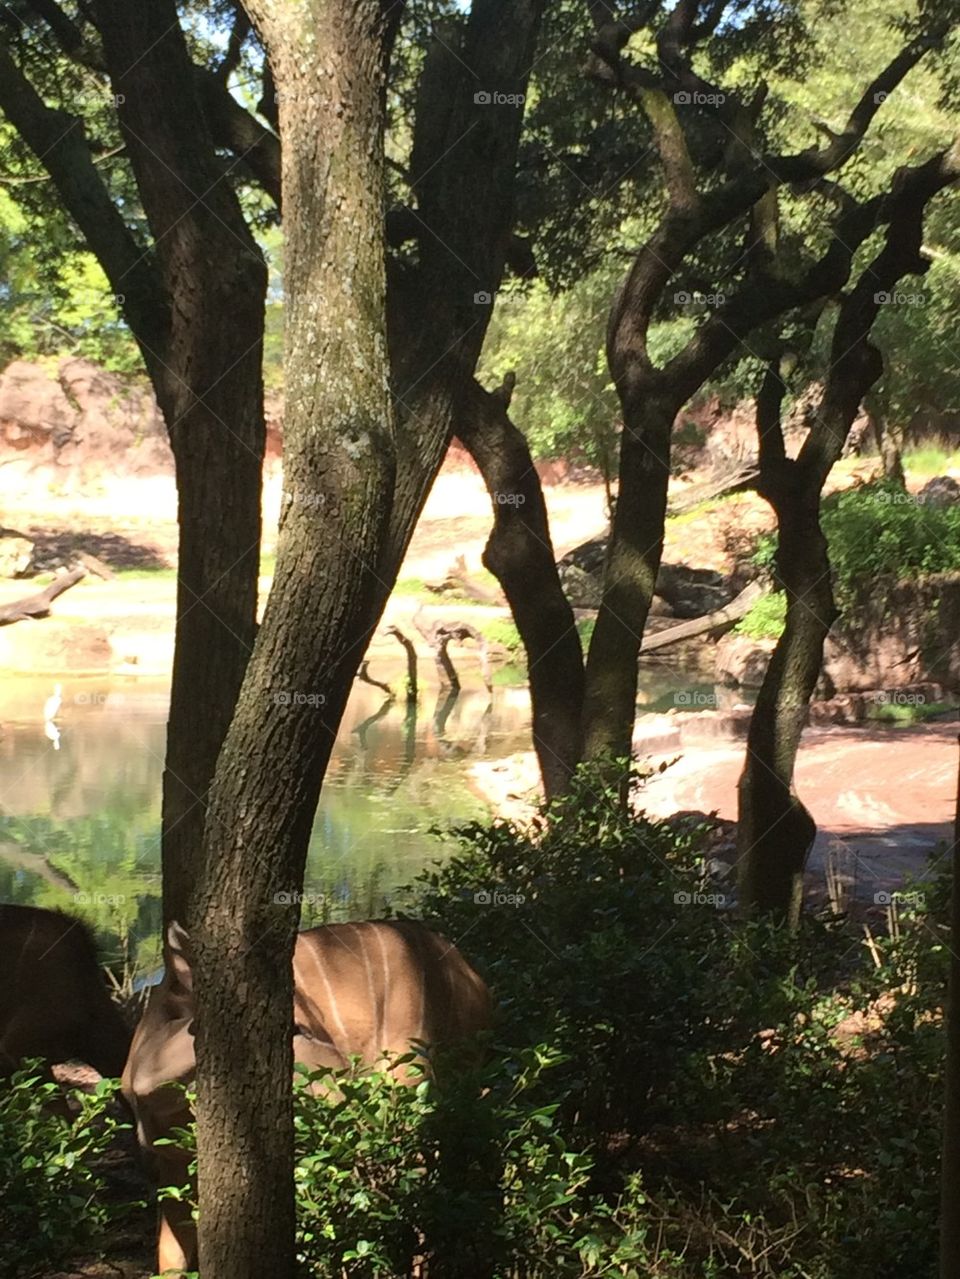 Okapi Forest